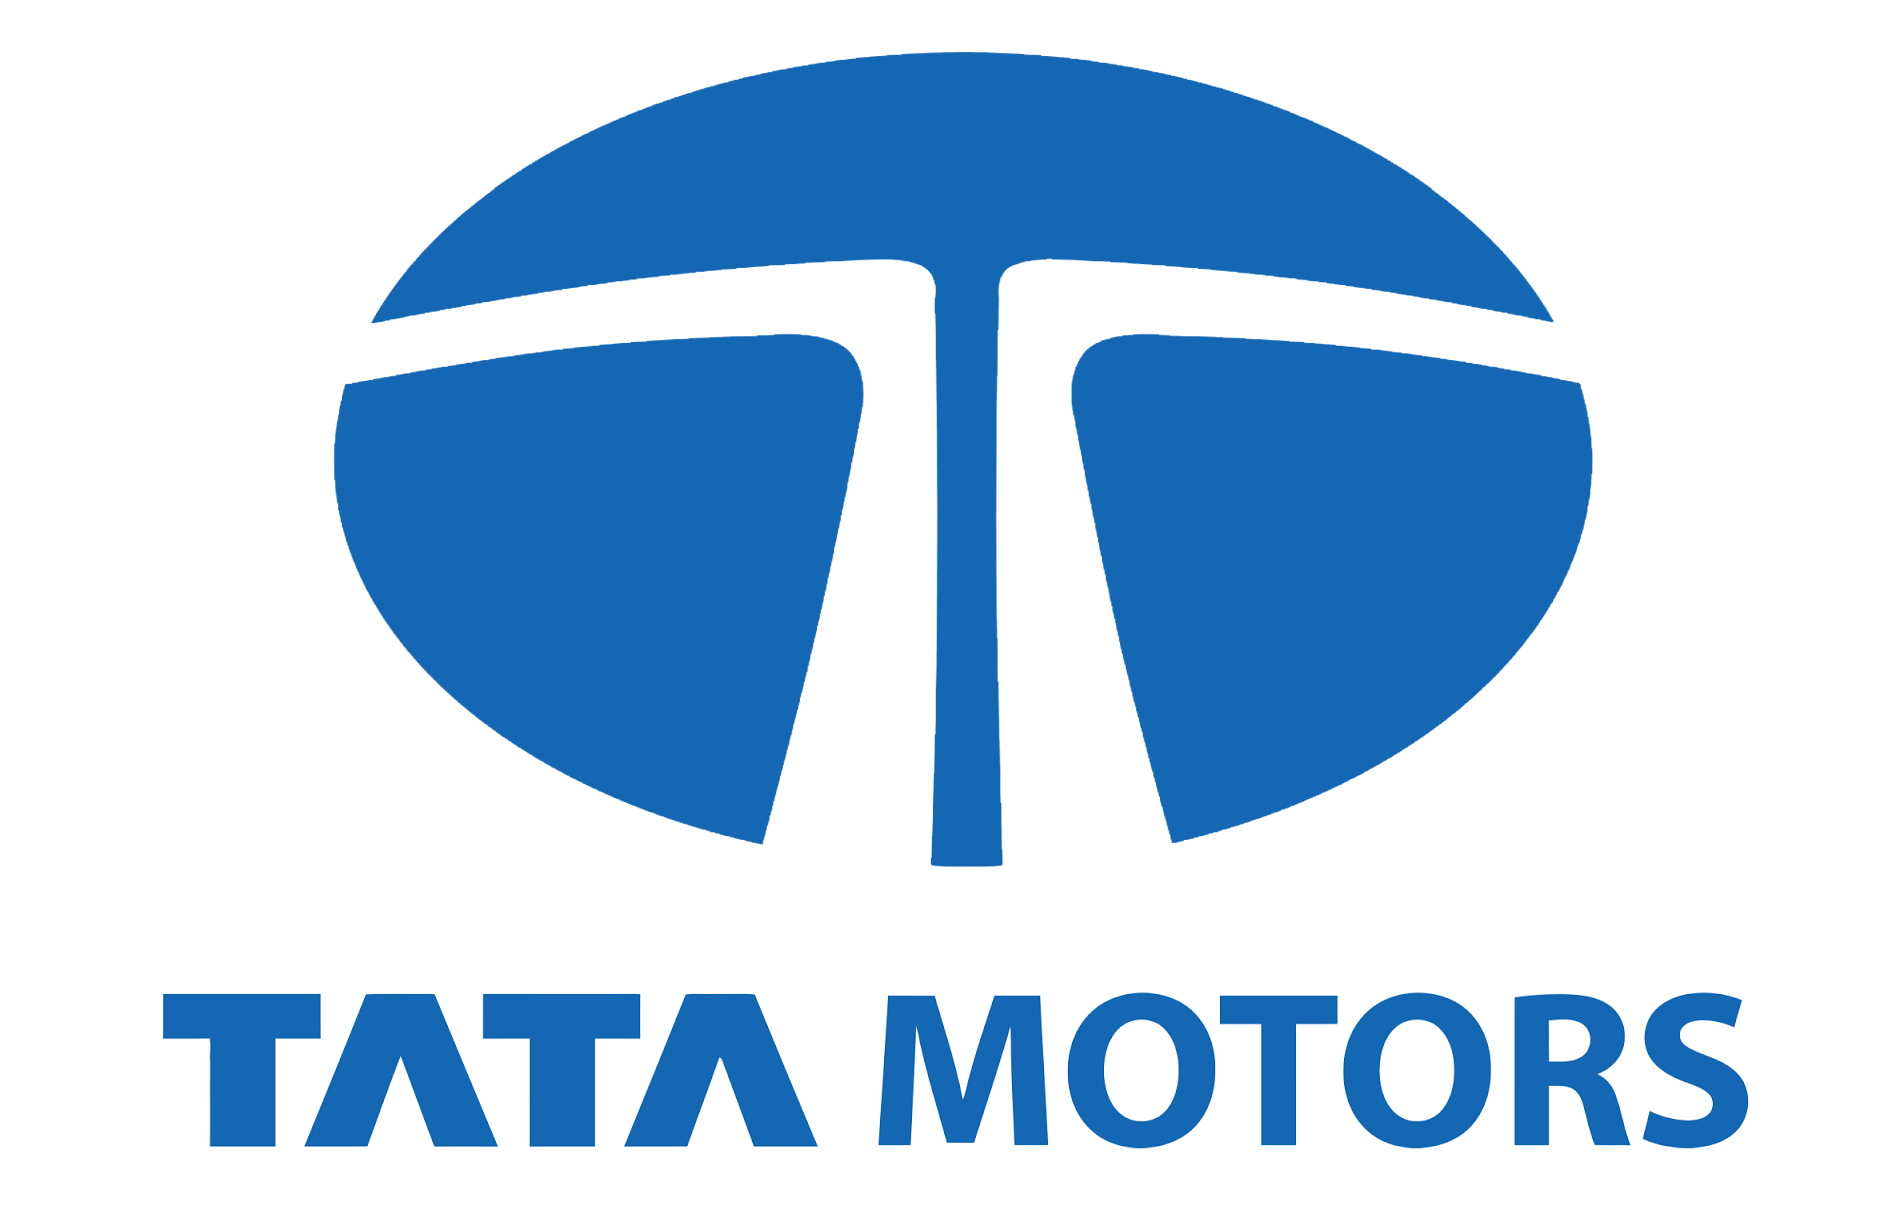 Tata Motors Cars Showroom - Sree Gokulam Motors|Show Room|Automotive